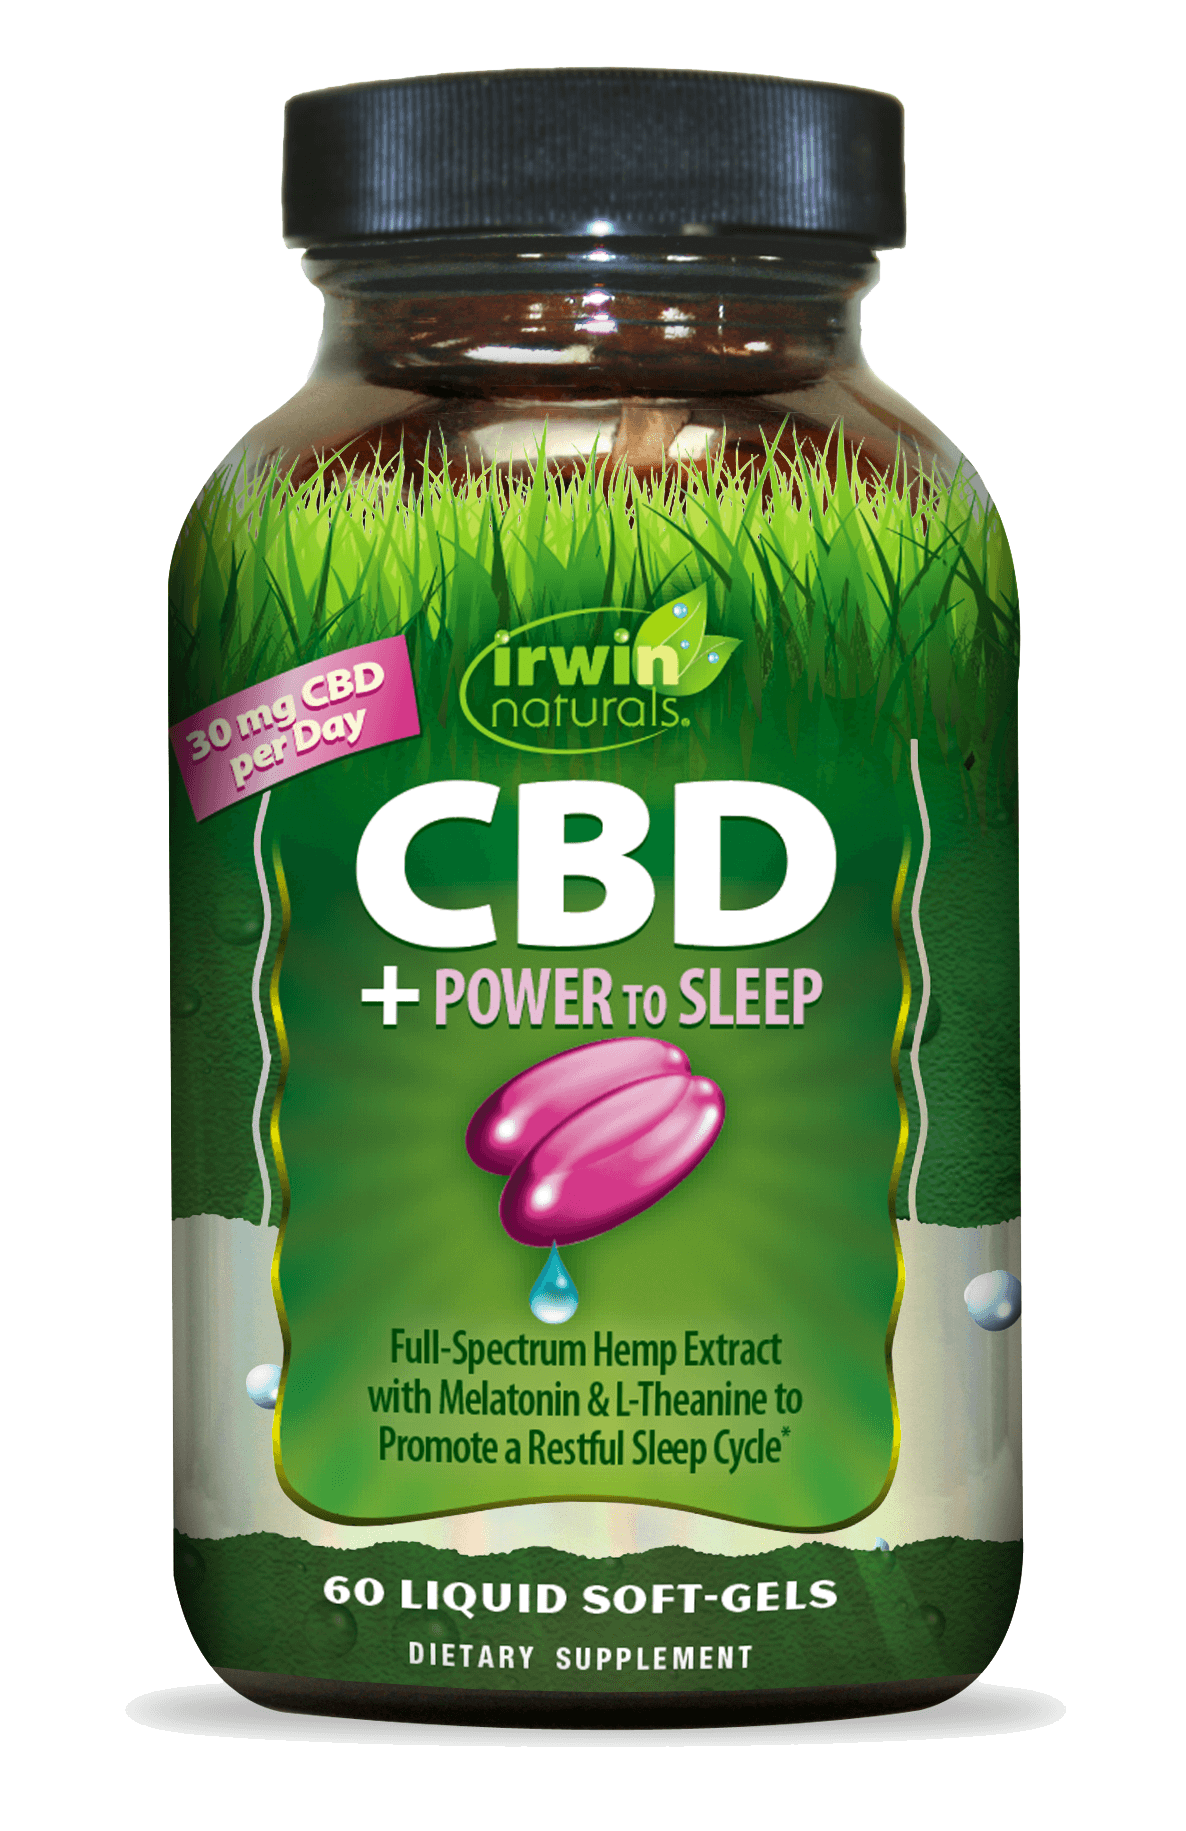 The Real CBD - CBD Sleep Solution - CBD against insomnia